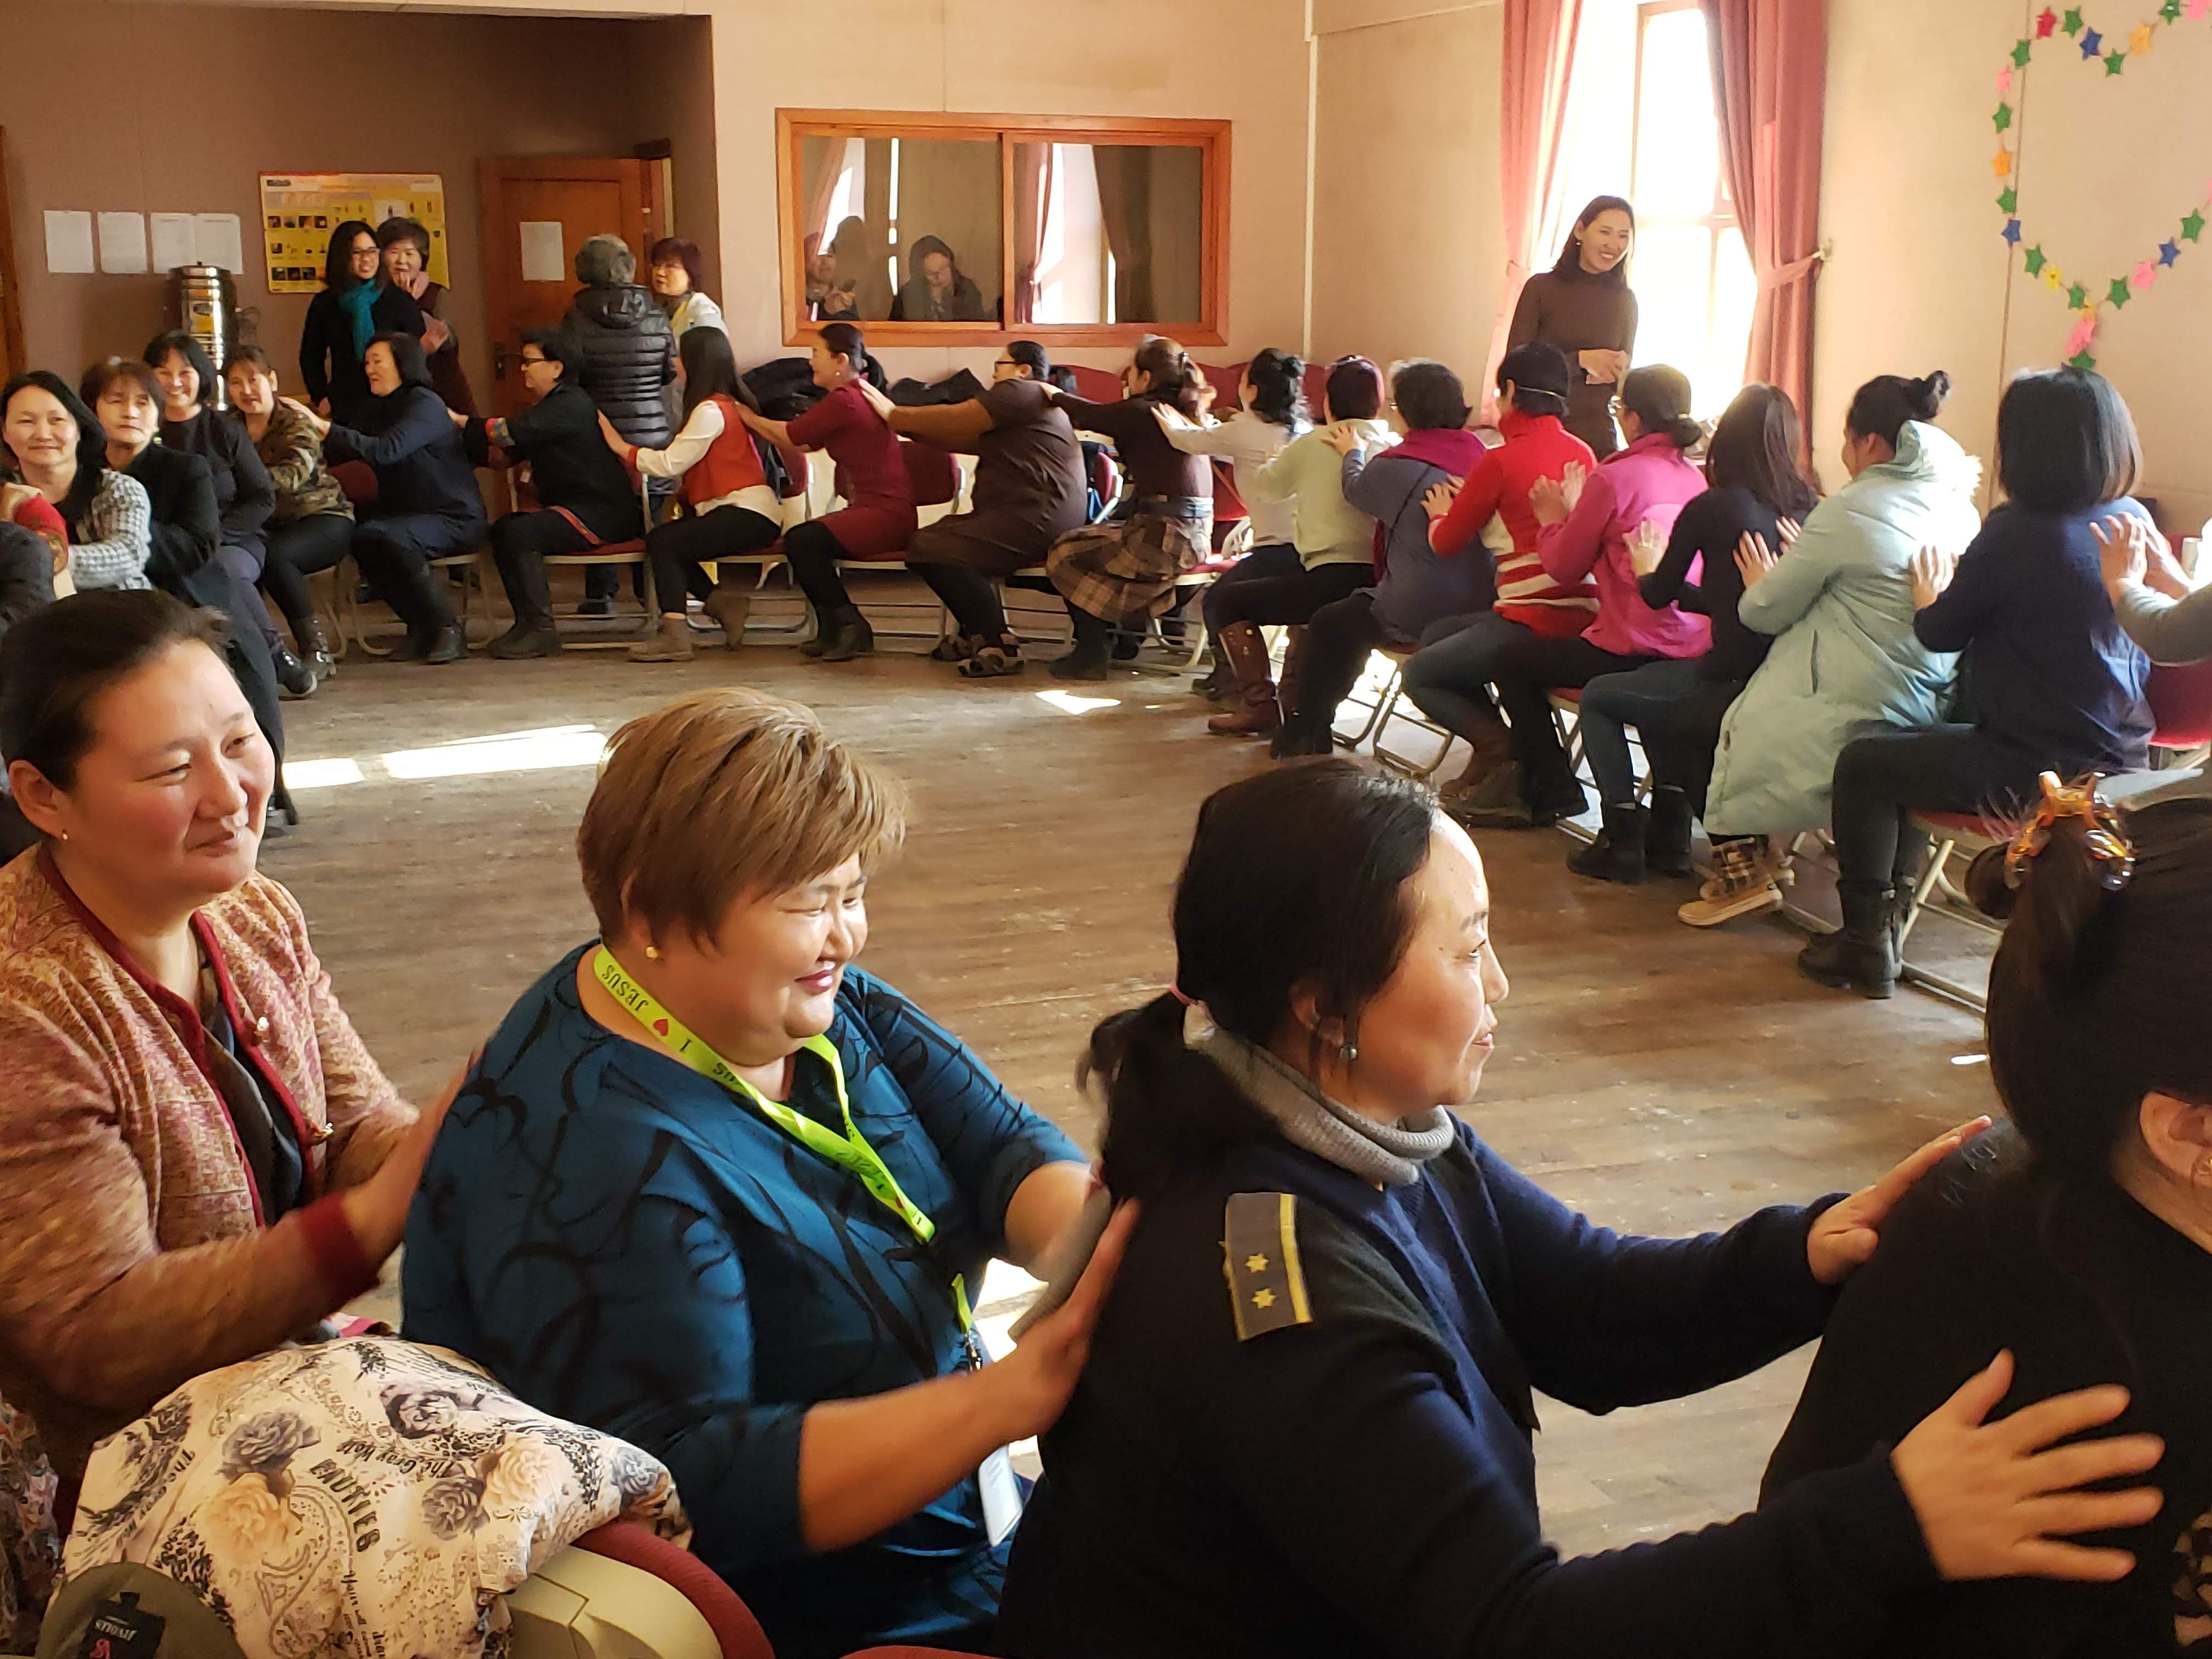 몽골기독여성훈련 중 레크리에이션의 모습. 사진 제공, 한인여선교회 전국연합회.